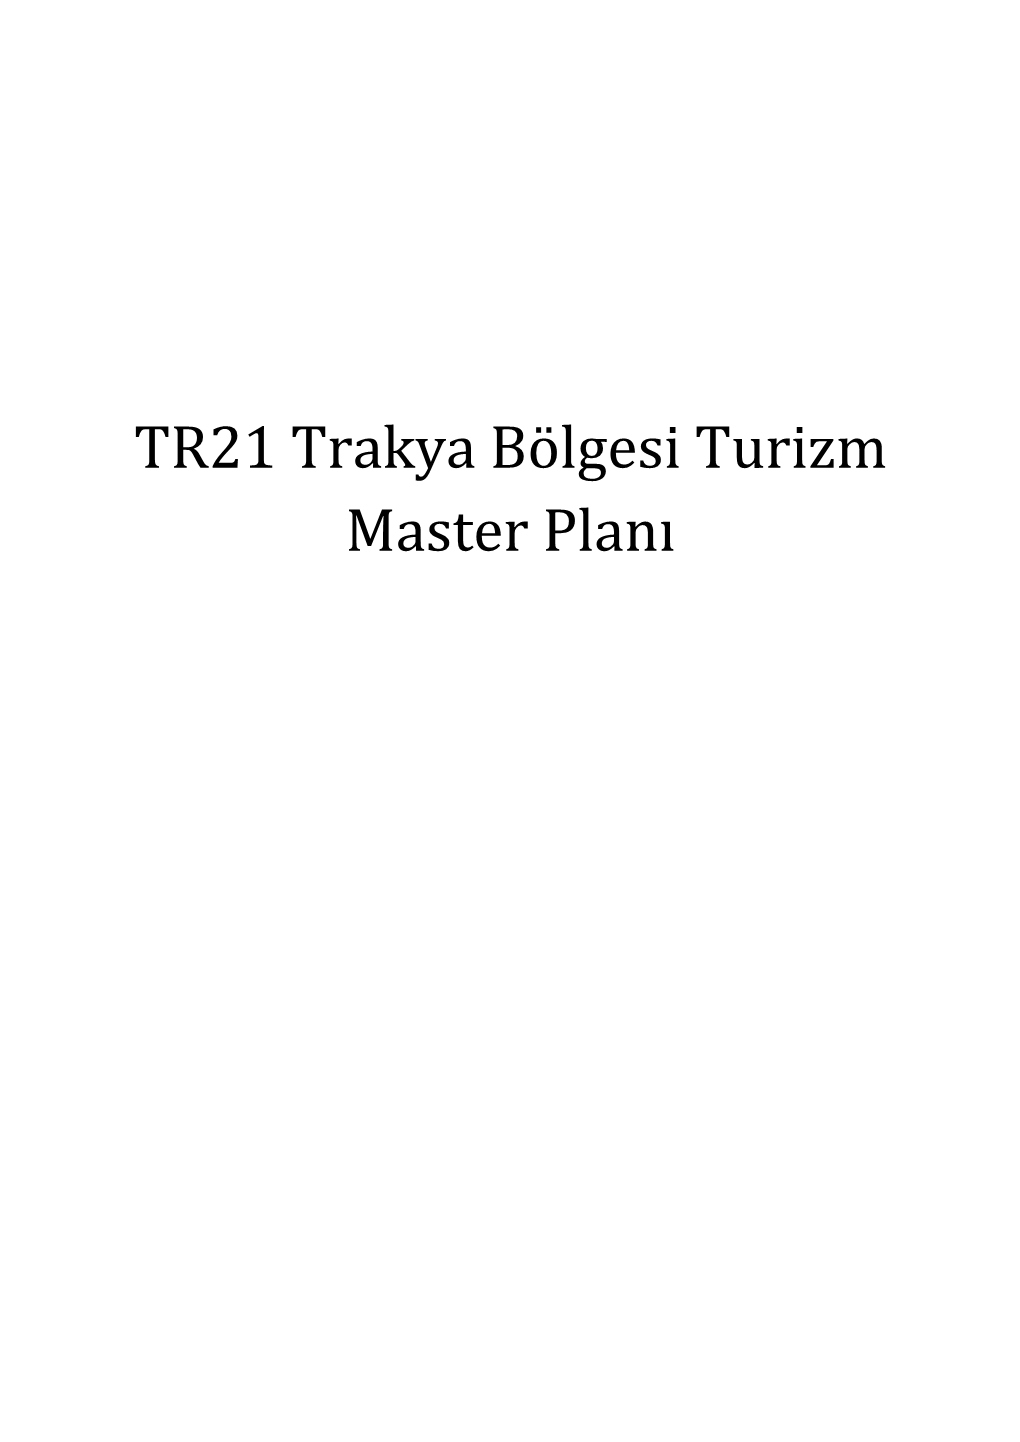 TR21 Trakya Bölgesi Turizm Master Planı